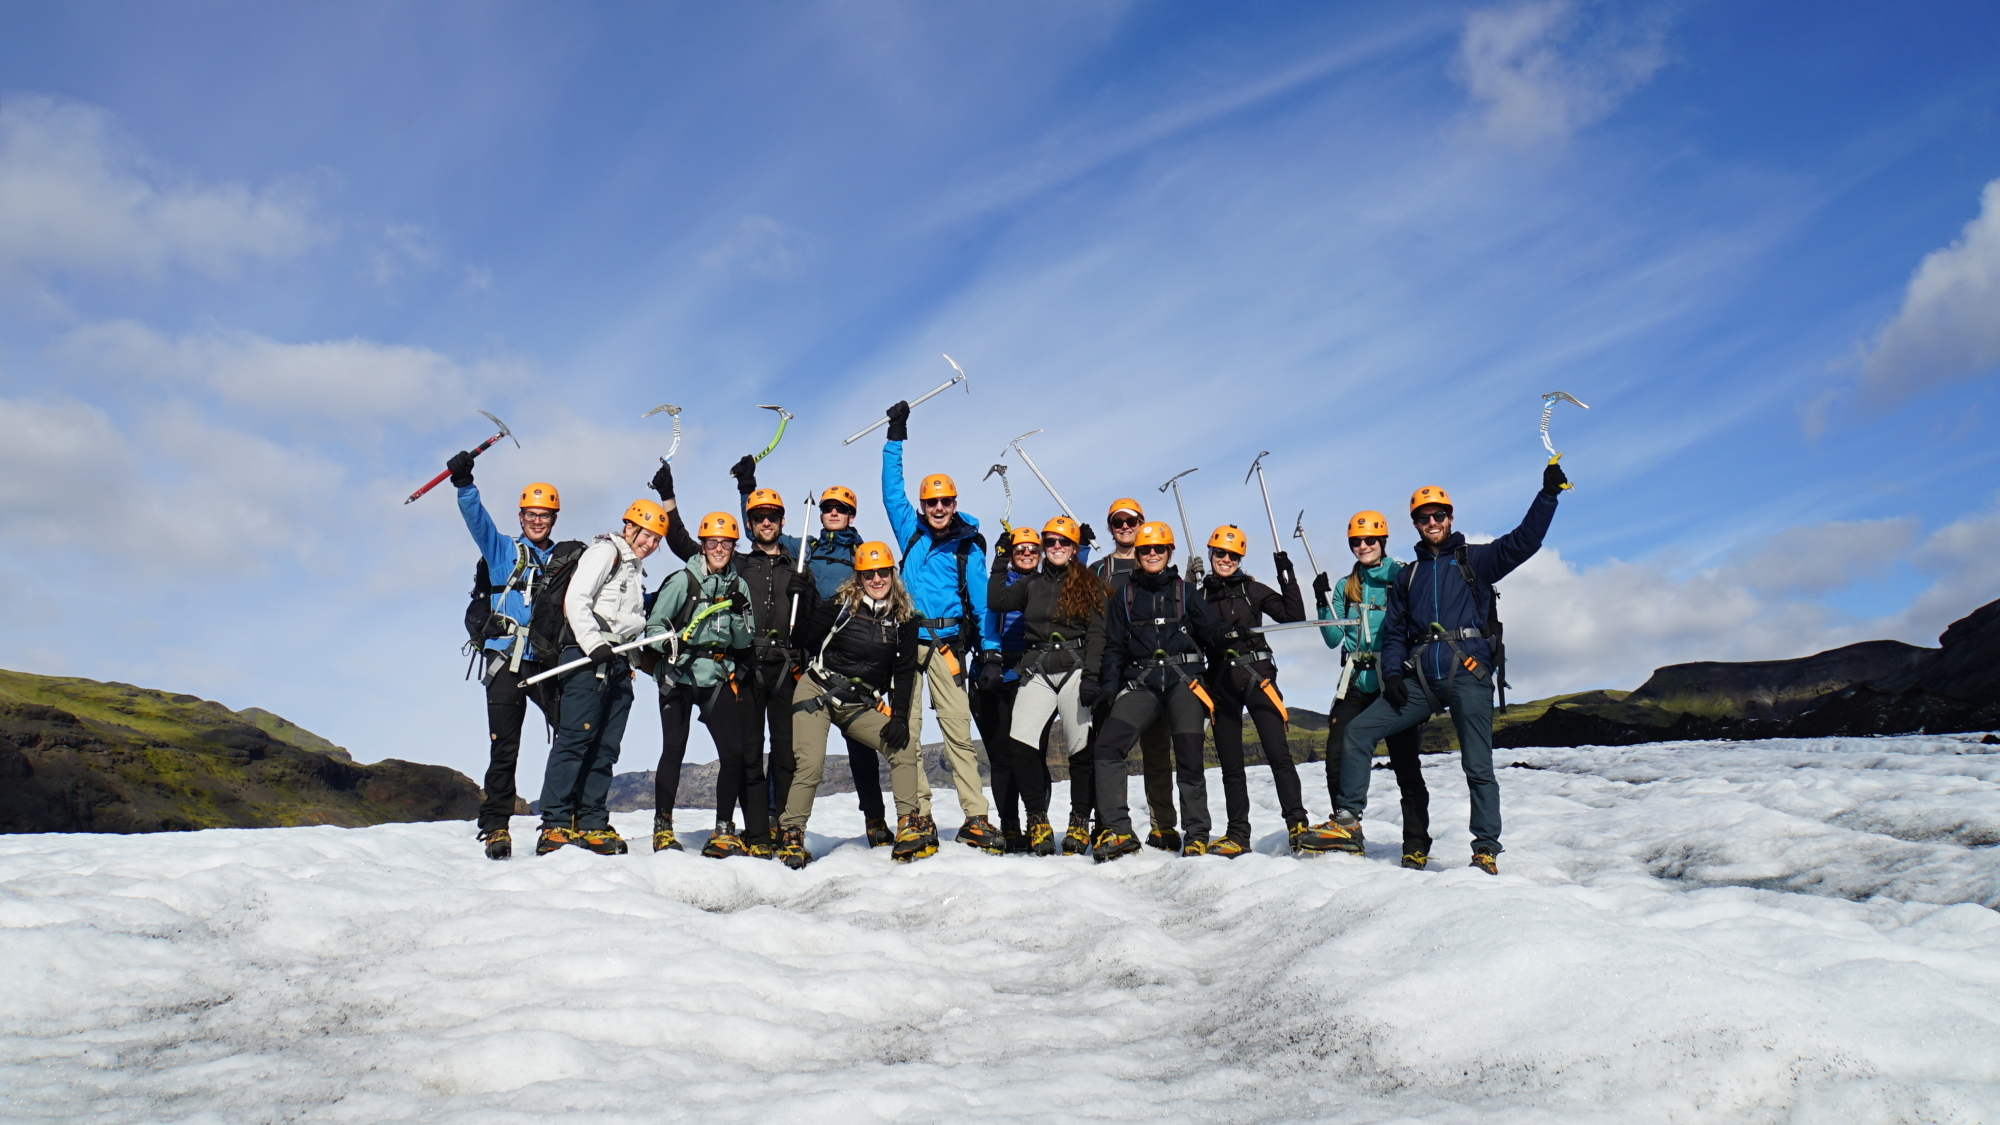 Kaaiman Gletsjerwandeling IJsland